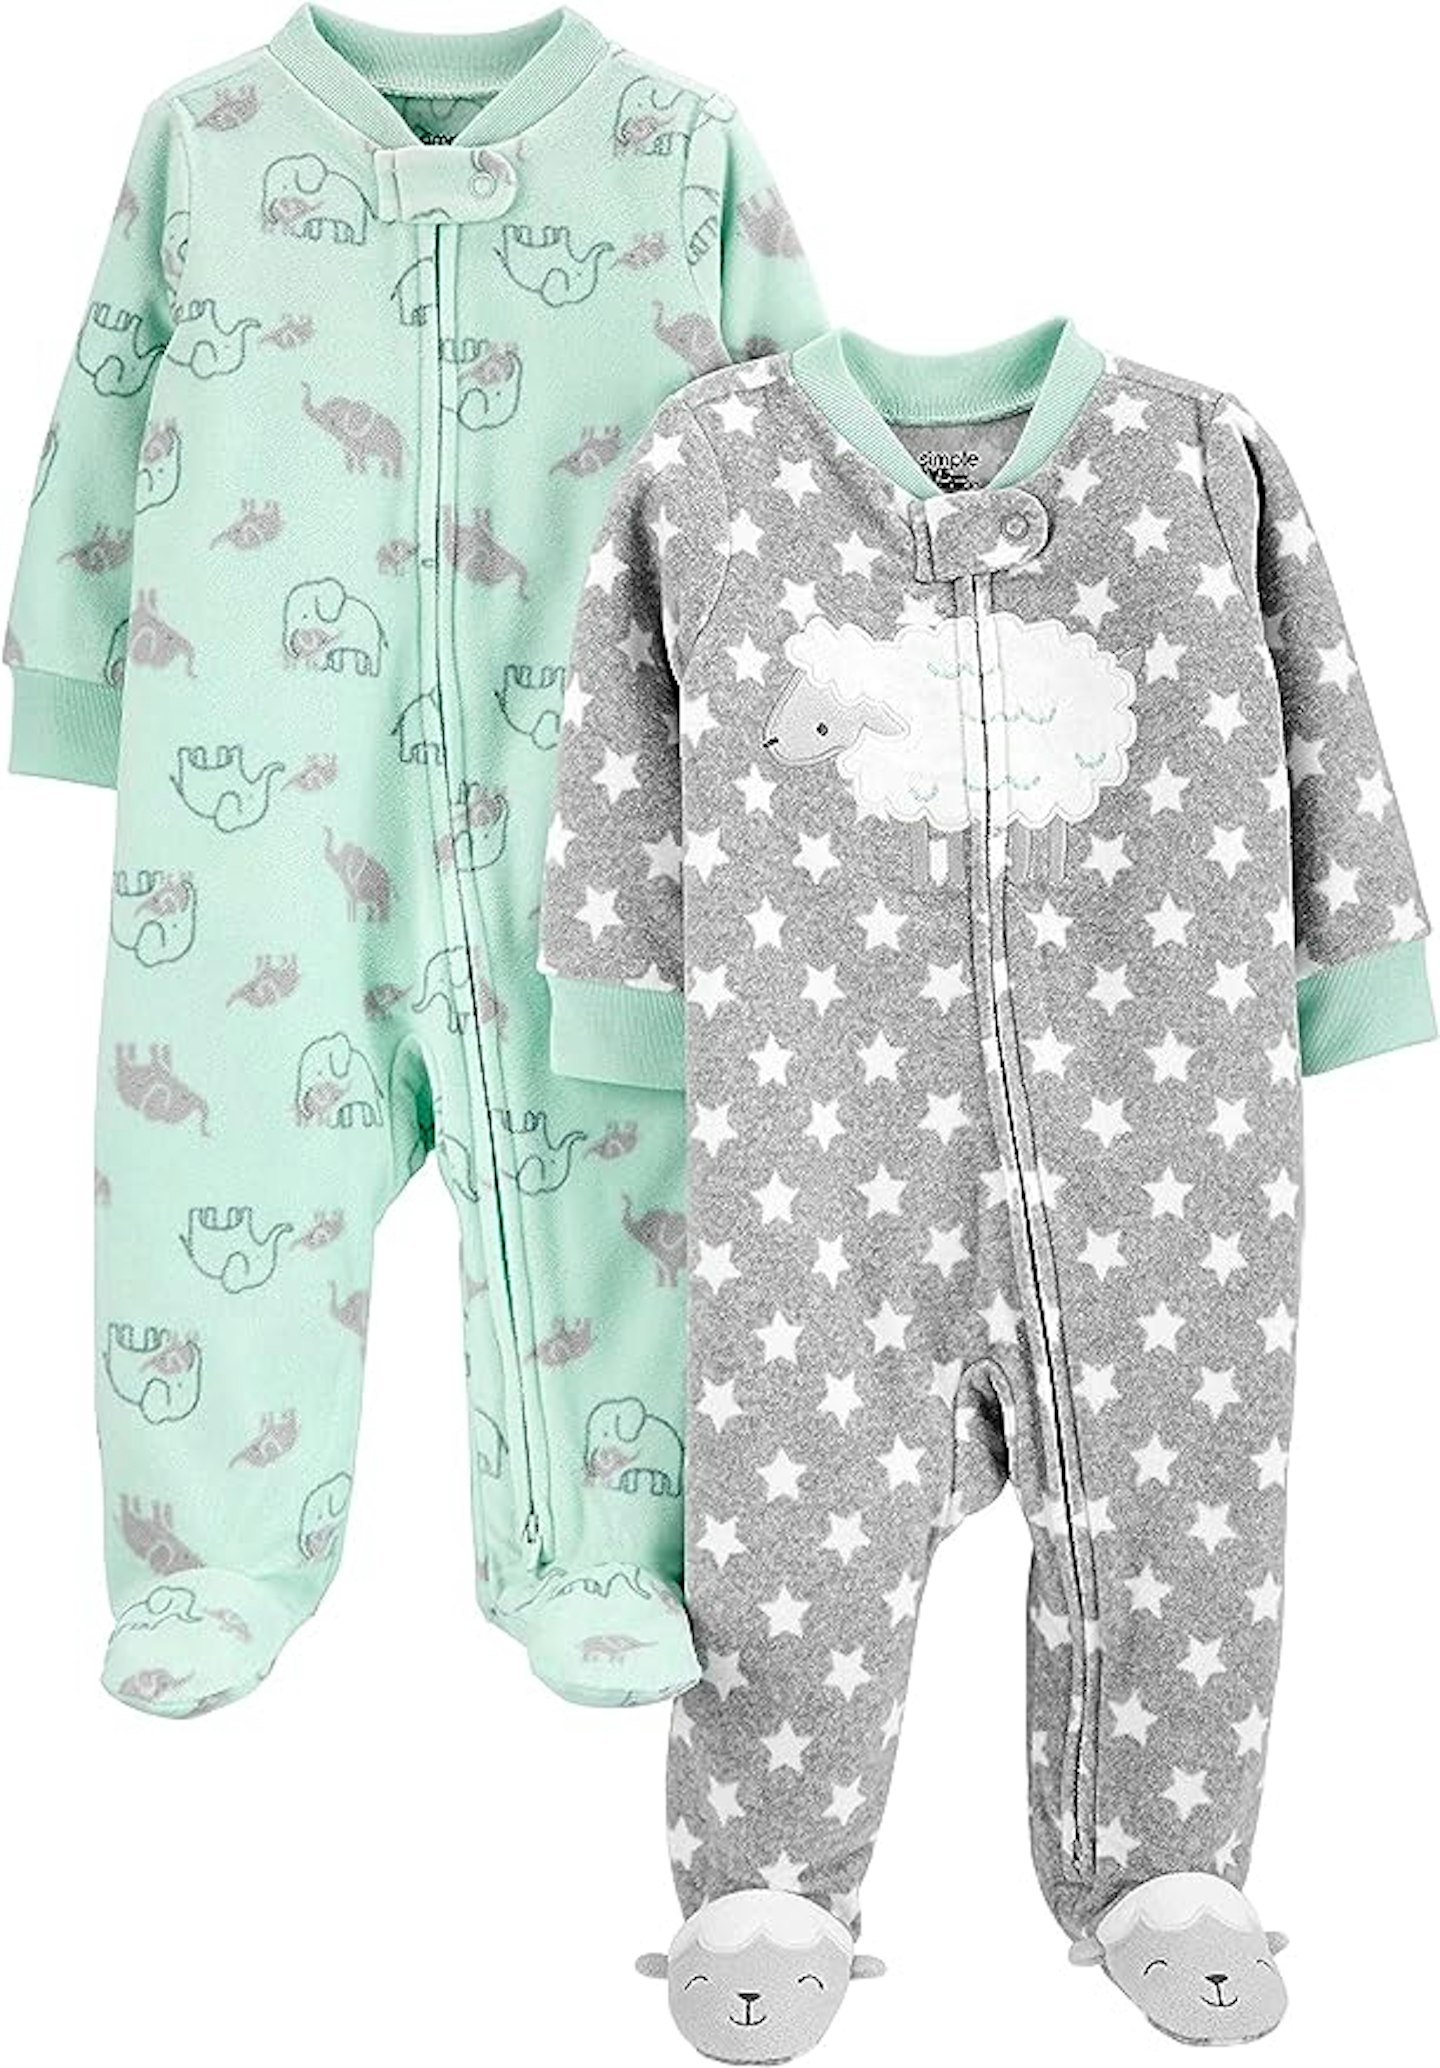 Amazon Simple Buys - Baby sleepwear and sleepsuits